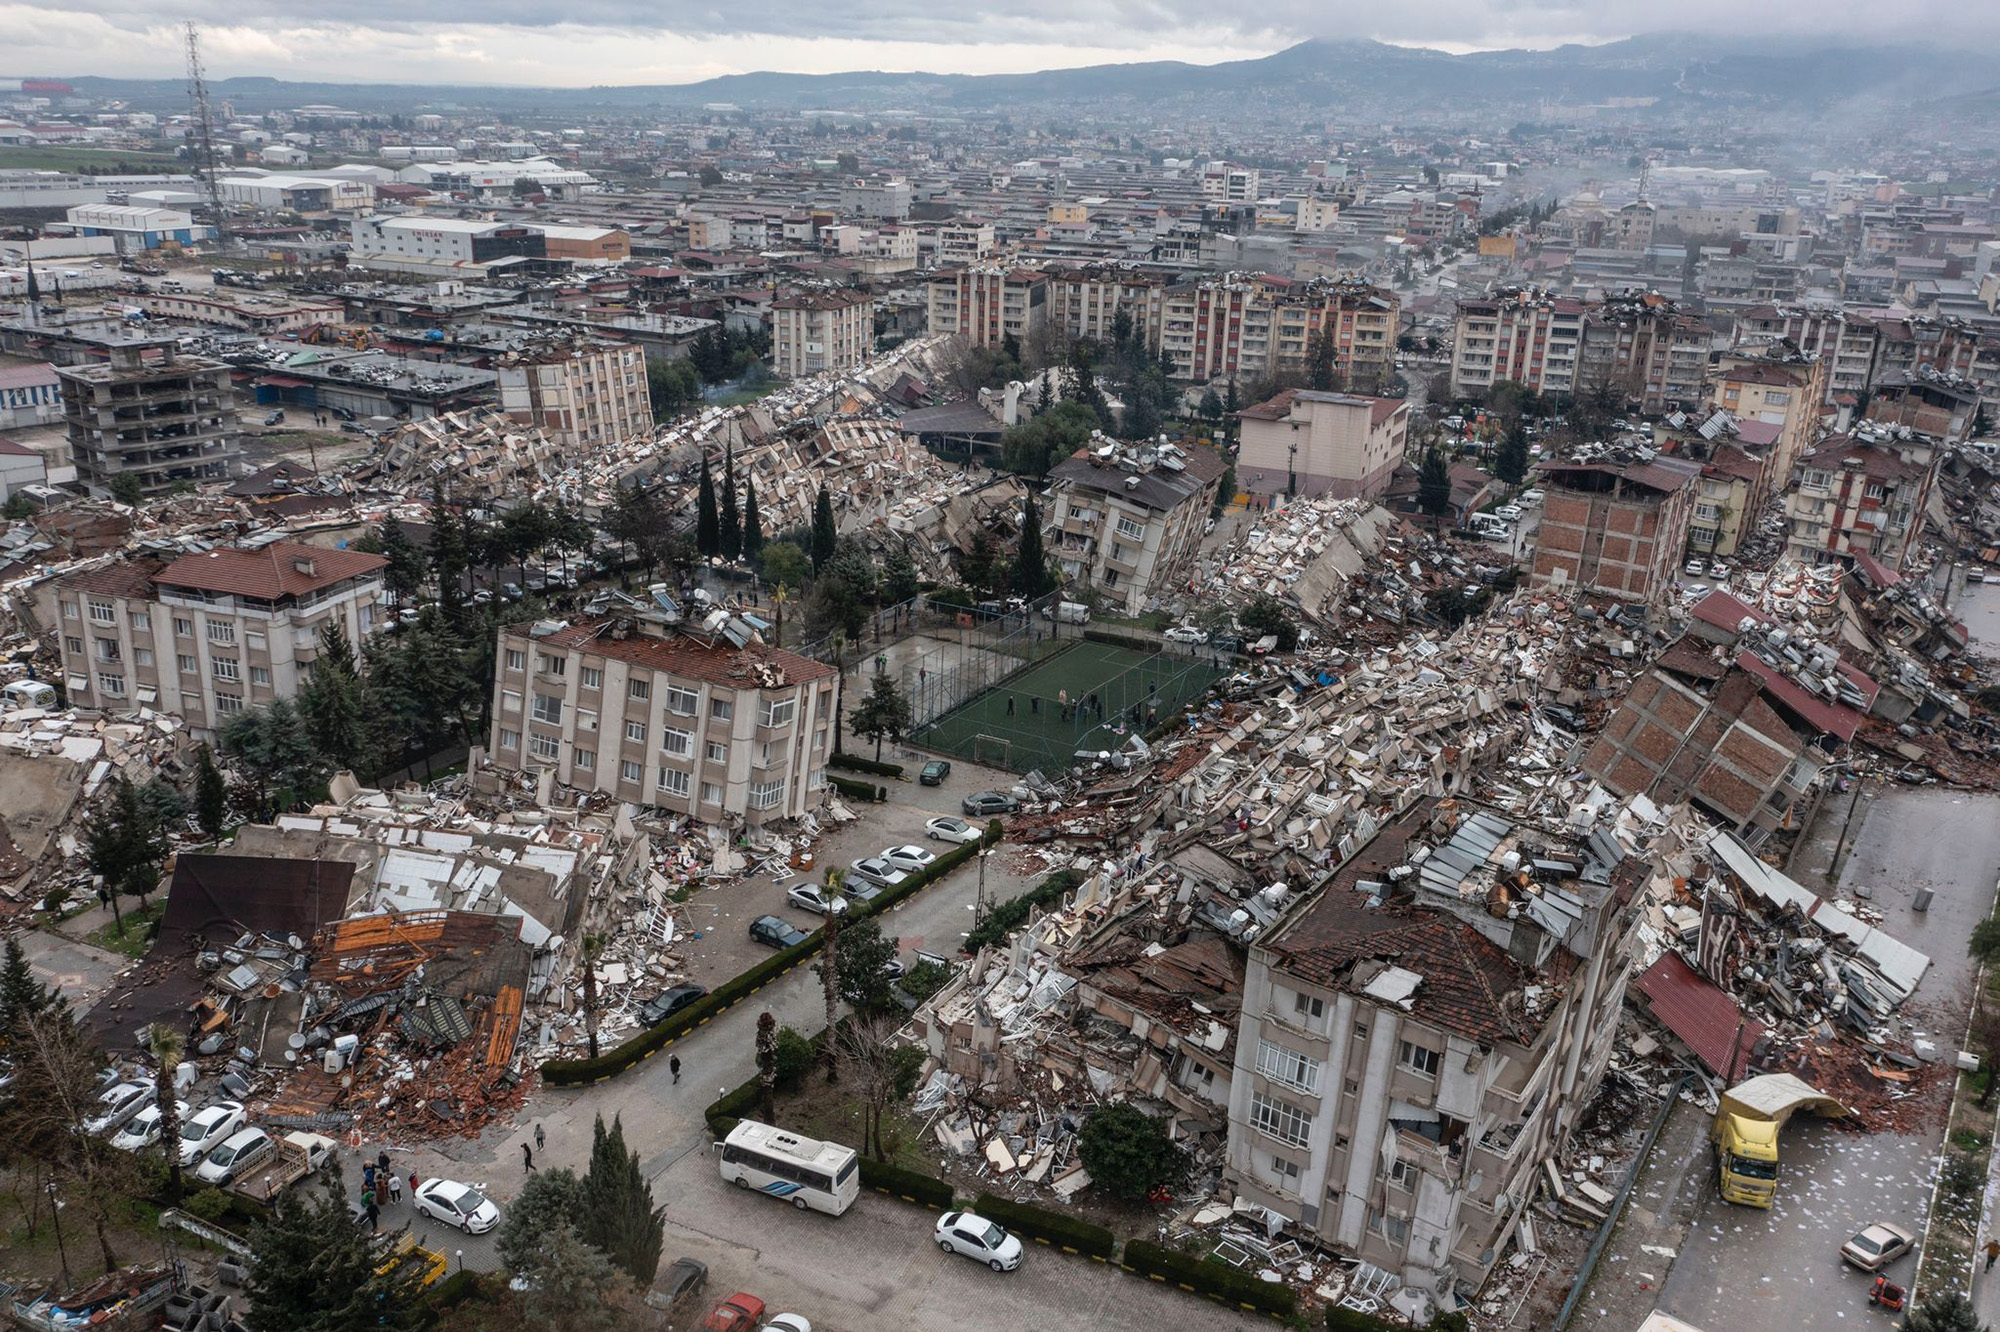 Trận động đất mạnh 7,8 độ Richter làm rung chuyển miền nam Thổ Nhĩ Kỳ, trong sáng ngày 6/2 (giờ địa phương) tiếp tục trở thành tâm điểm chú ý của dư luận thế giới. Ít nhất 1.500 người đã thiệt mạng ở Thổ Nhĩ Kỳ và Syria, cùng hàng ngàn người khác bị thương sau thảm họa khủng khiếp. Ngoài thiệt hại về người, rất nhiều tòa nhà trong đó có cả các di tích lịch sử cổ Gaziantep cùng bị tàn phá nghiêm trọng.